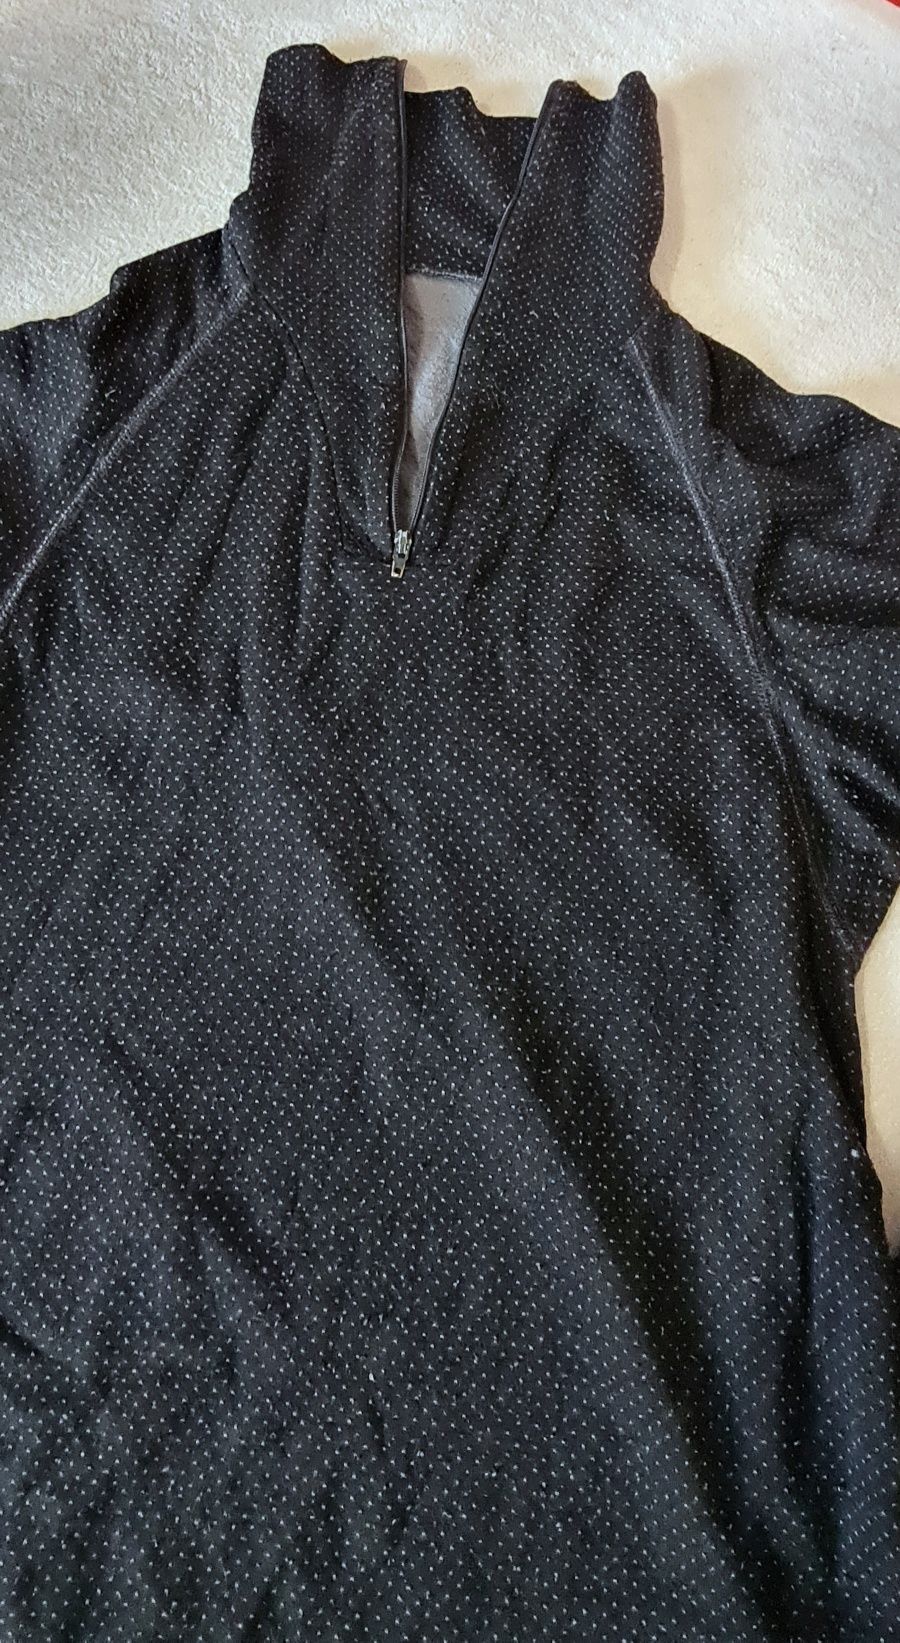 Odzież termiczna męska bluzka firmy DEVOLD rozm.M